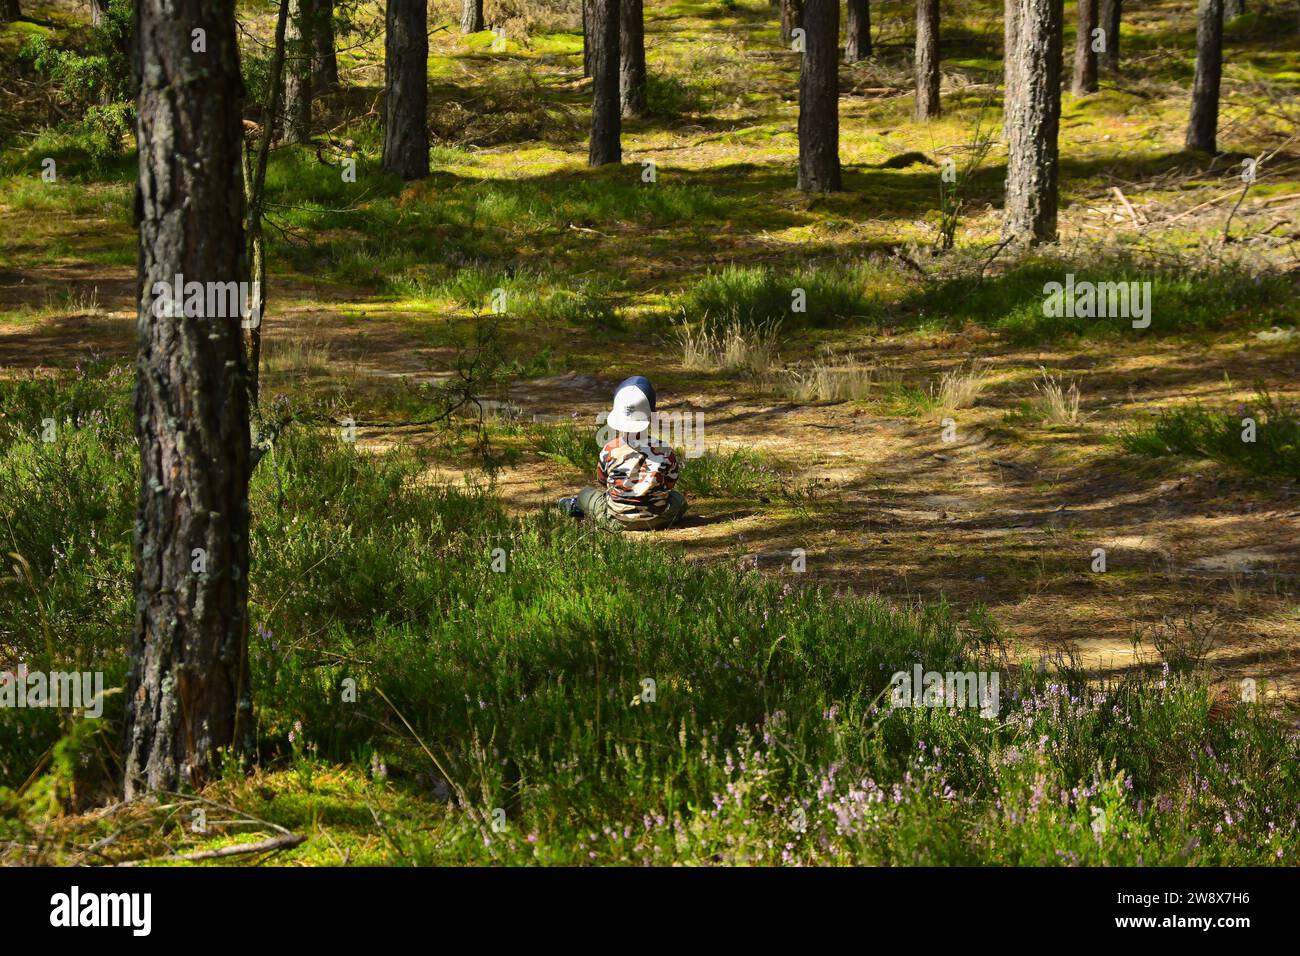 Un bambino in uniforme mimetica siede tutto solo nel mezzo della foresta. dintorni bellissimi, erba e alberi Foto Stock